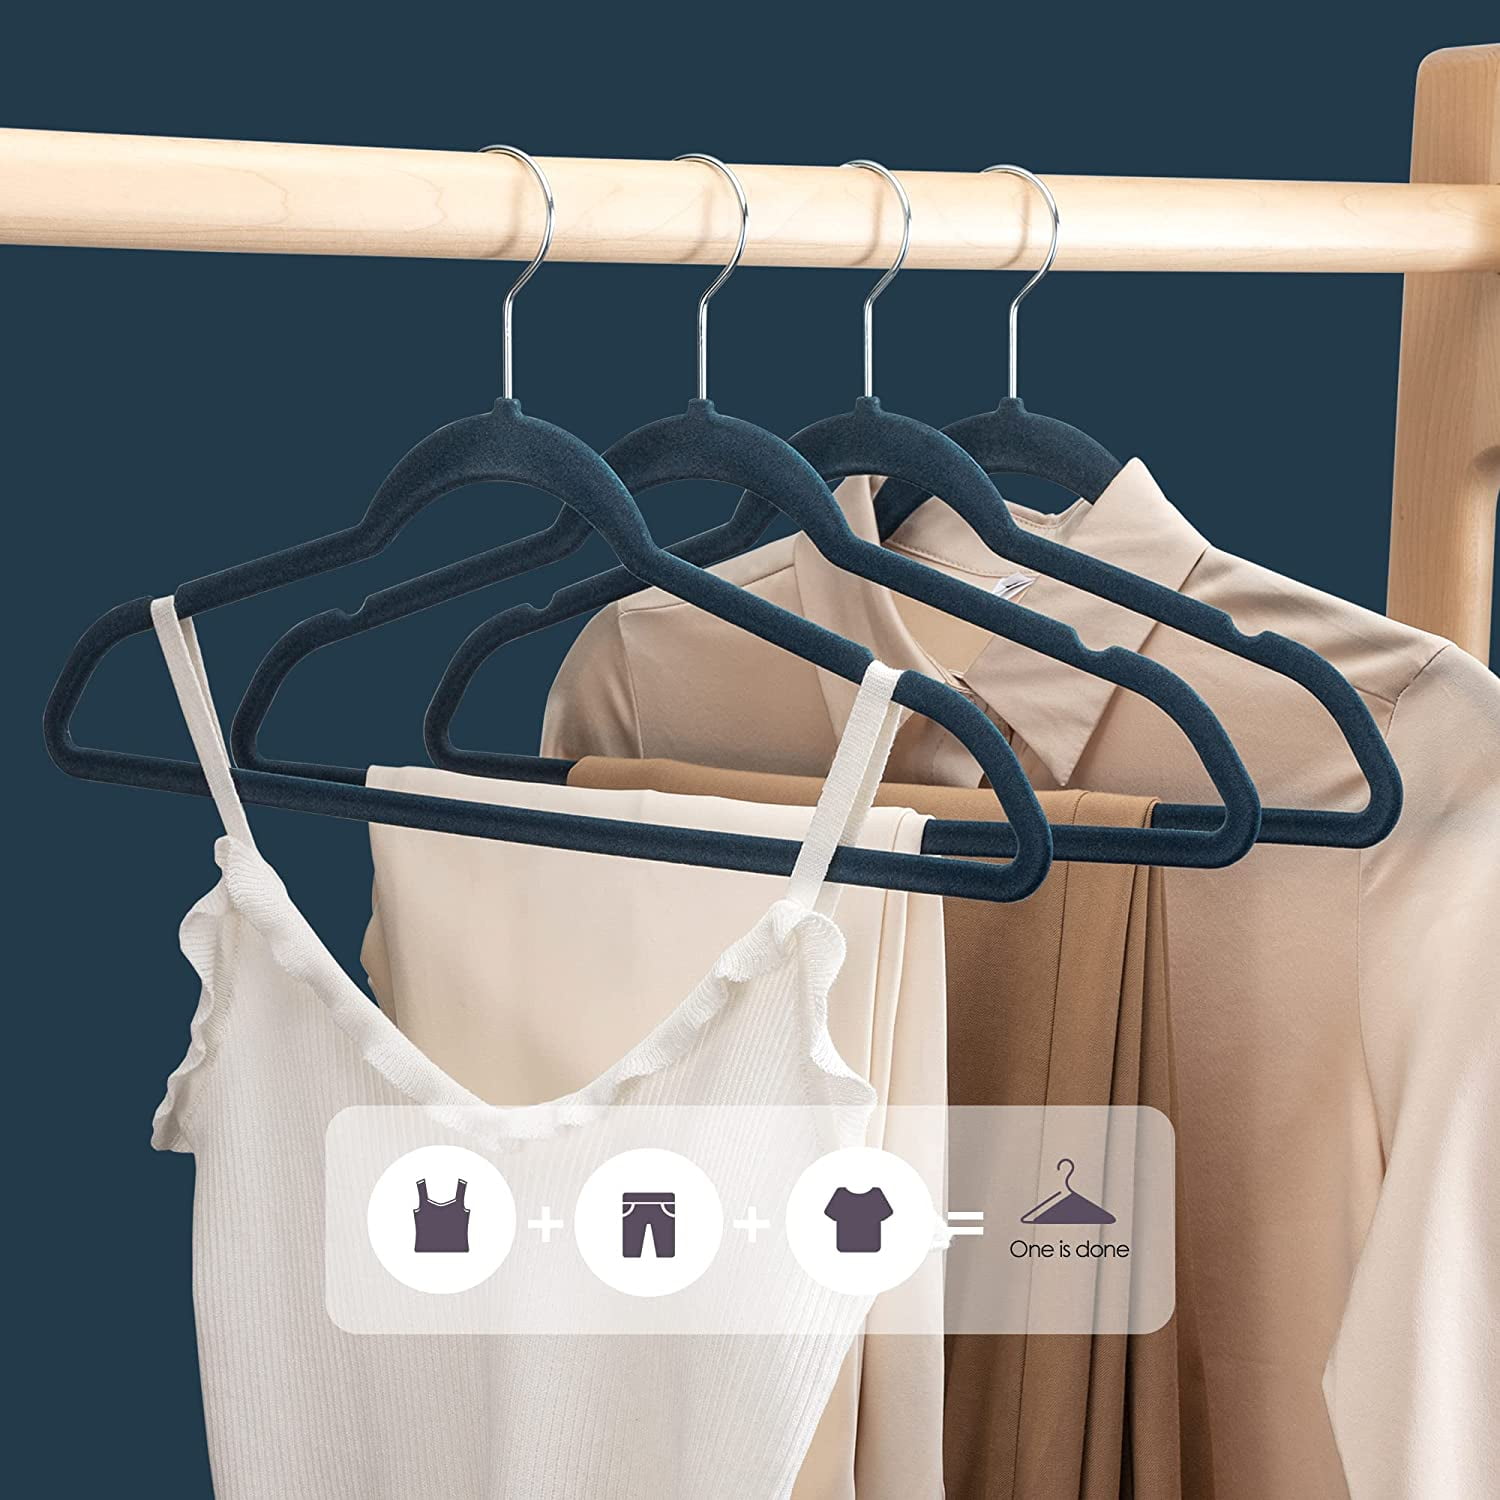 Jersow Velvet Hangers, 60 Pack Non Slip Felt Hangers Space Saving Clothes Hanger, Velvet Hanger Heavy Duty Adult Hanger for Coats and Suits (Taupe)